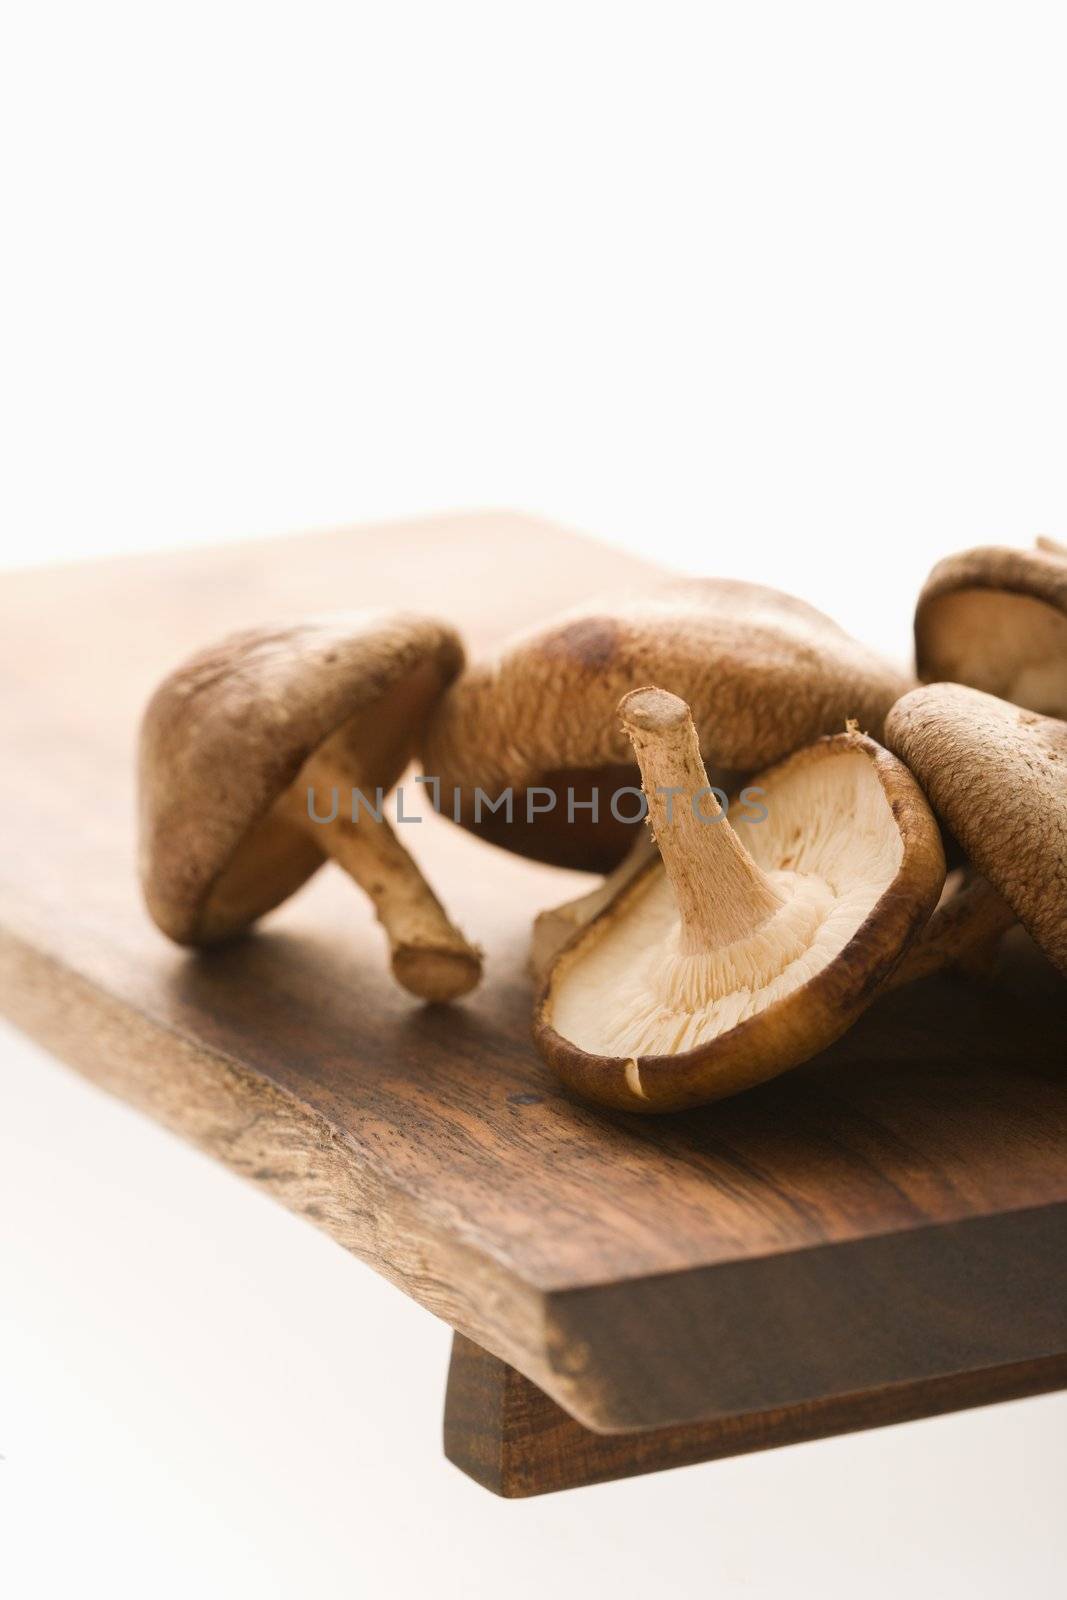 Pile of shiitake mushrooms on cutting board.